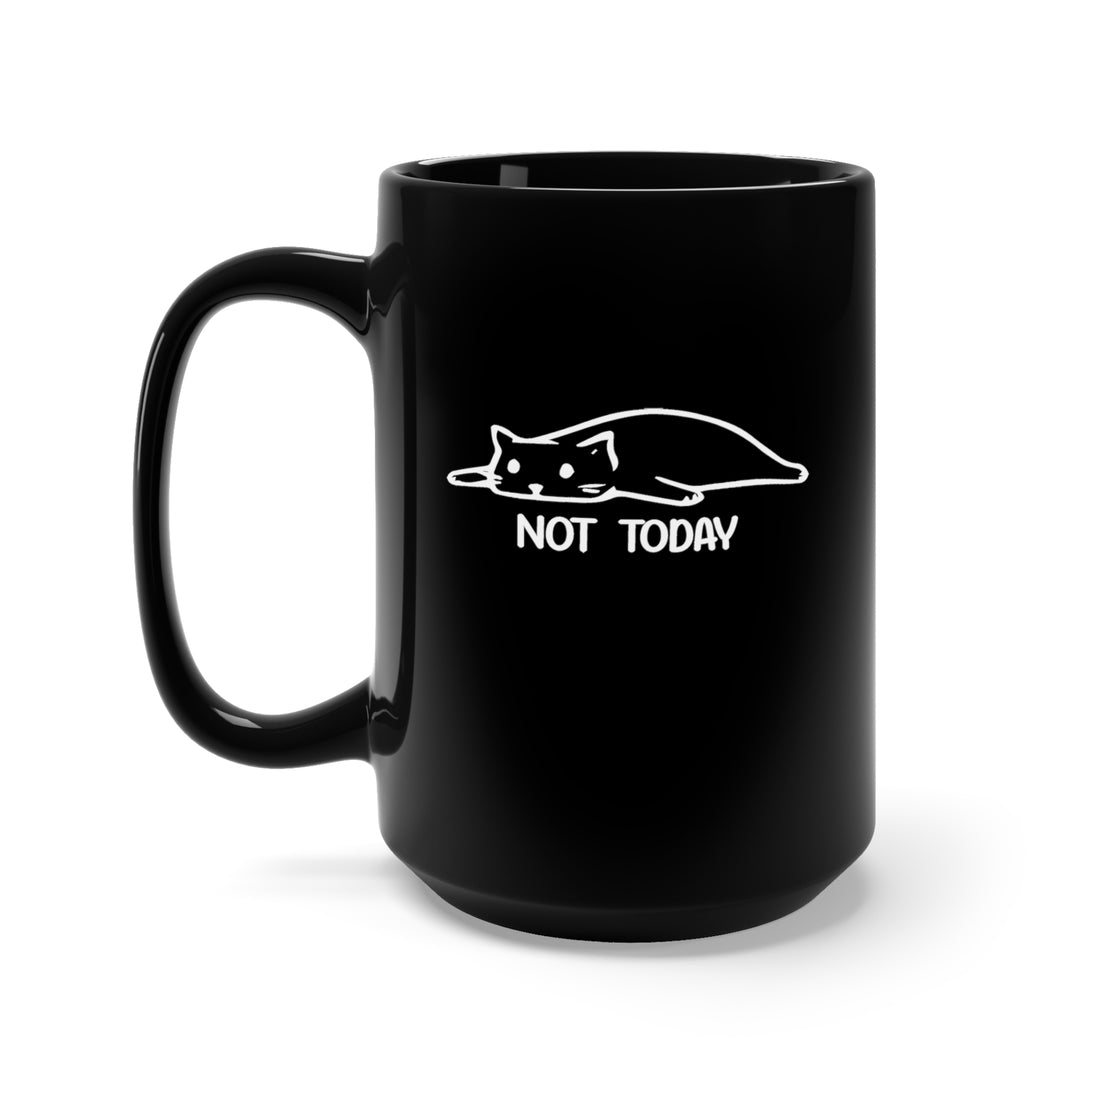 Not Today - Large 15oz Black Mug